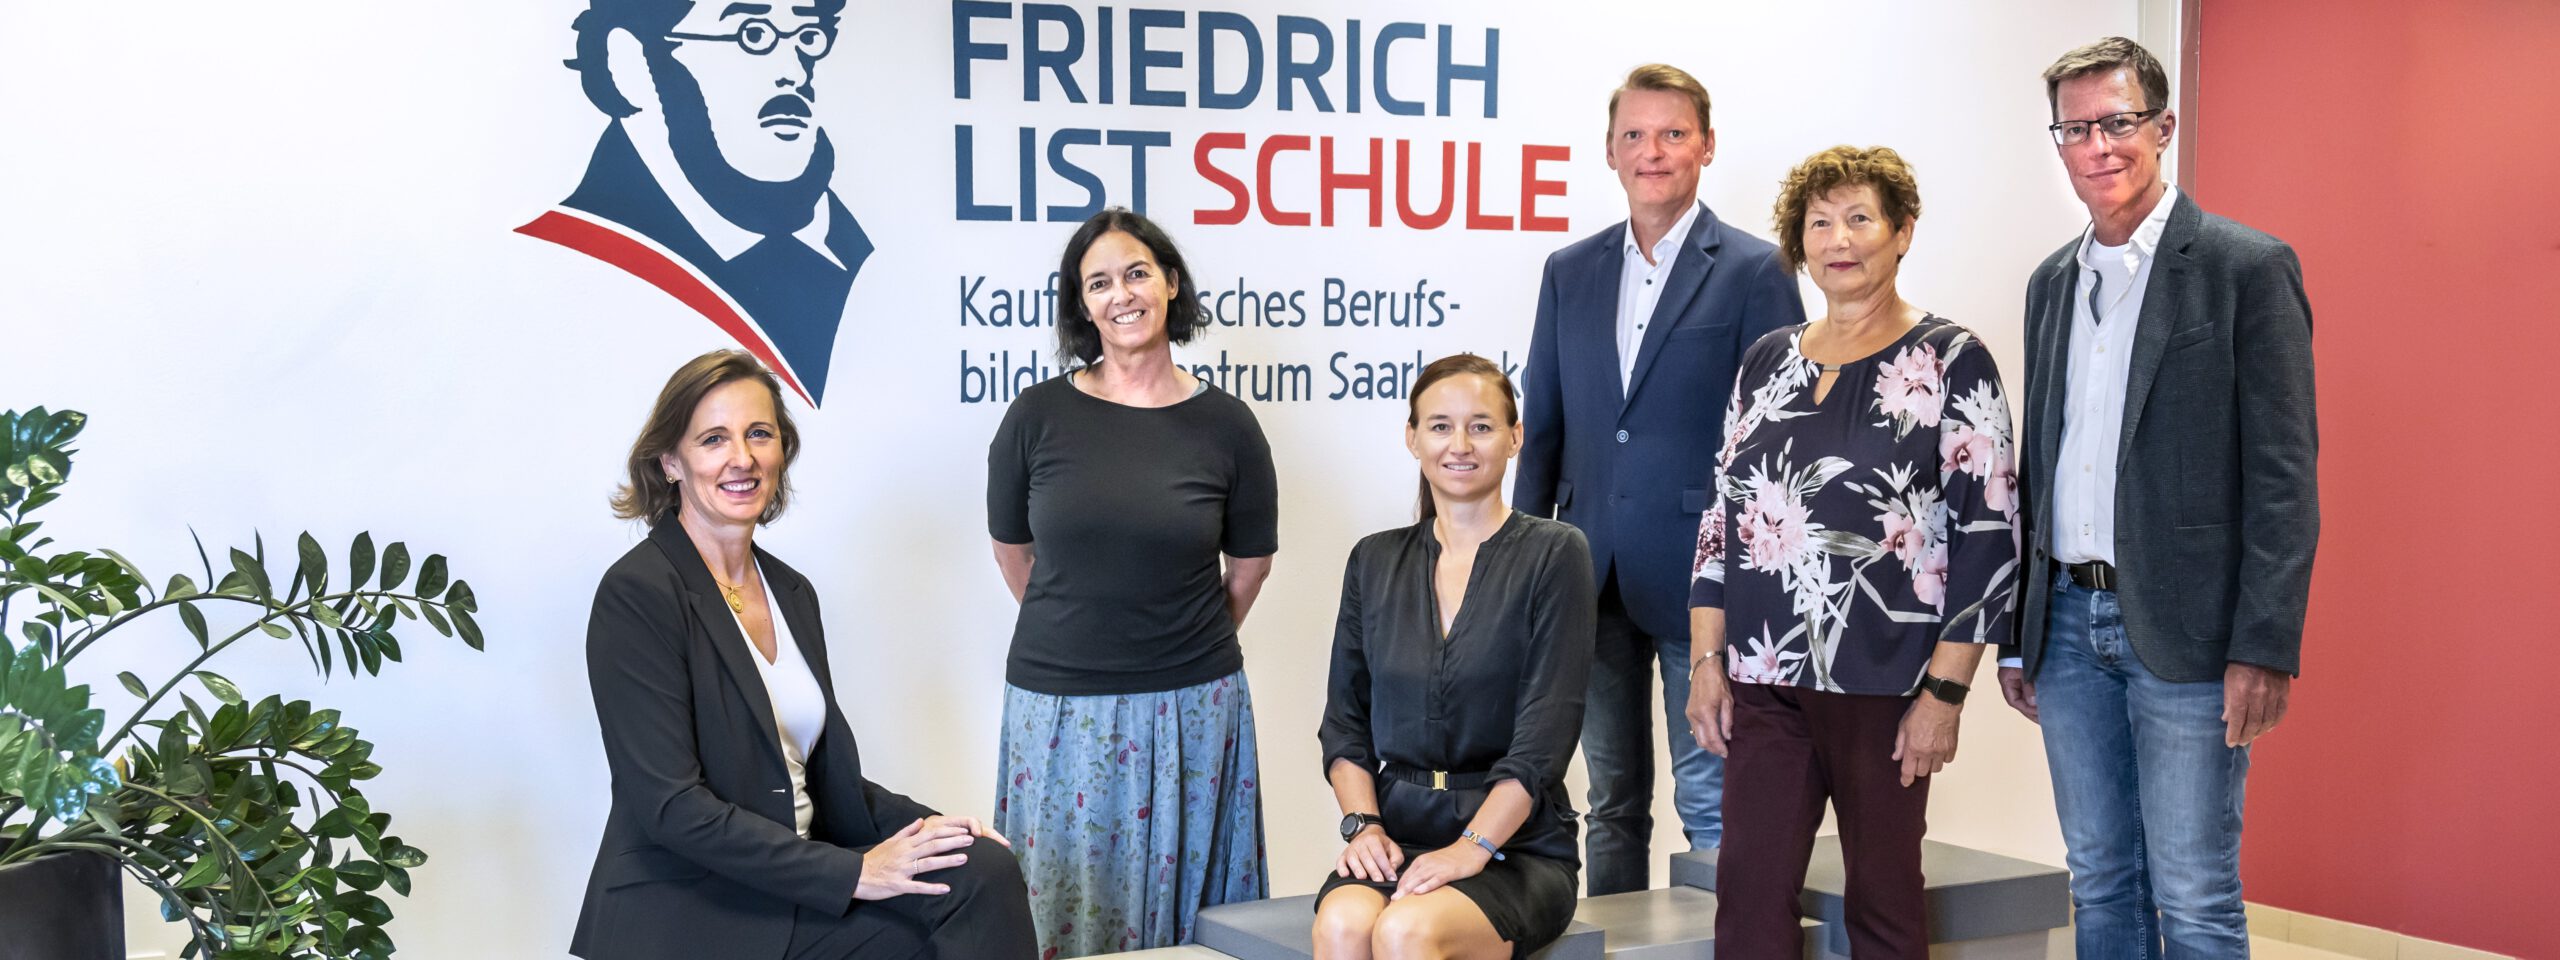 Vertreter des Fördervereins posieren vor dem Friedrich-List-Schule Logo